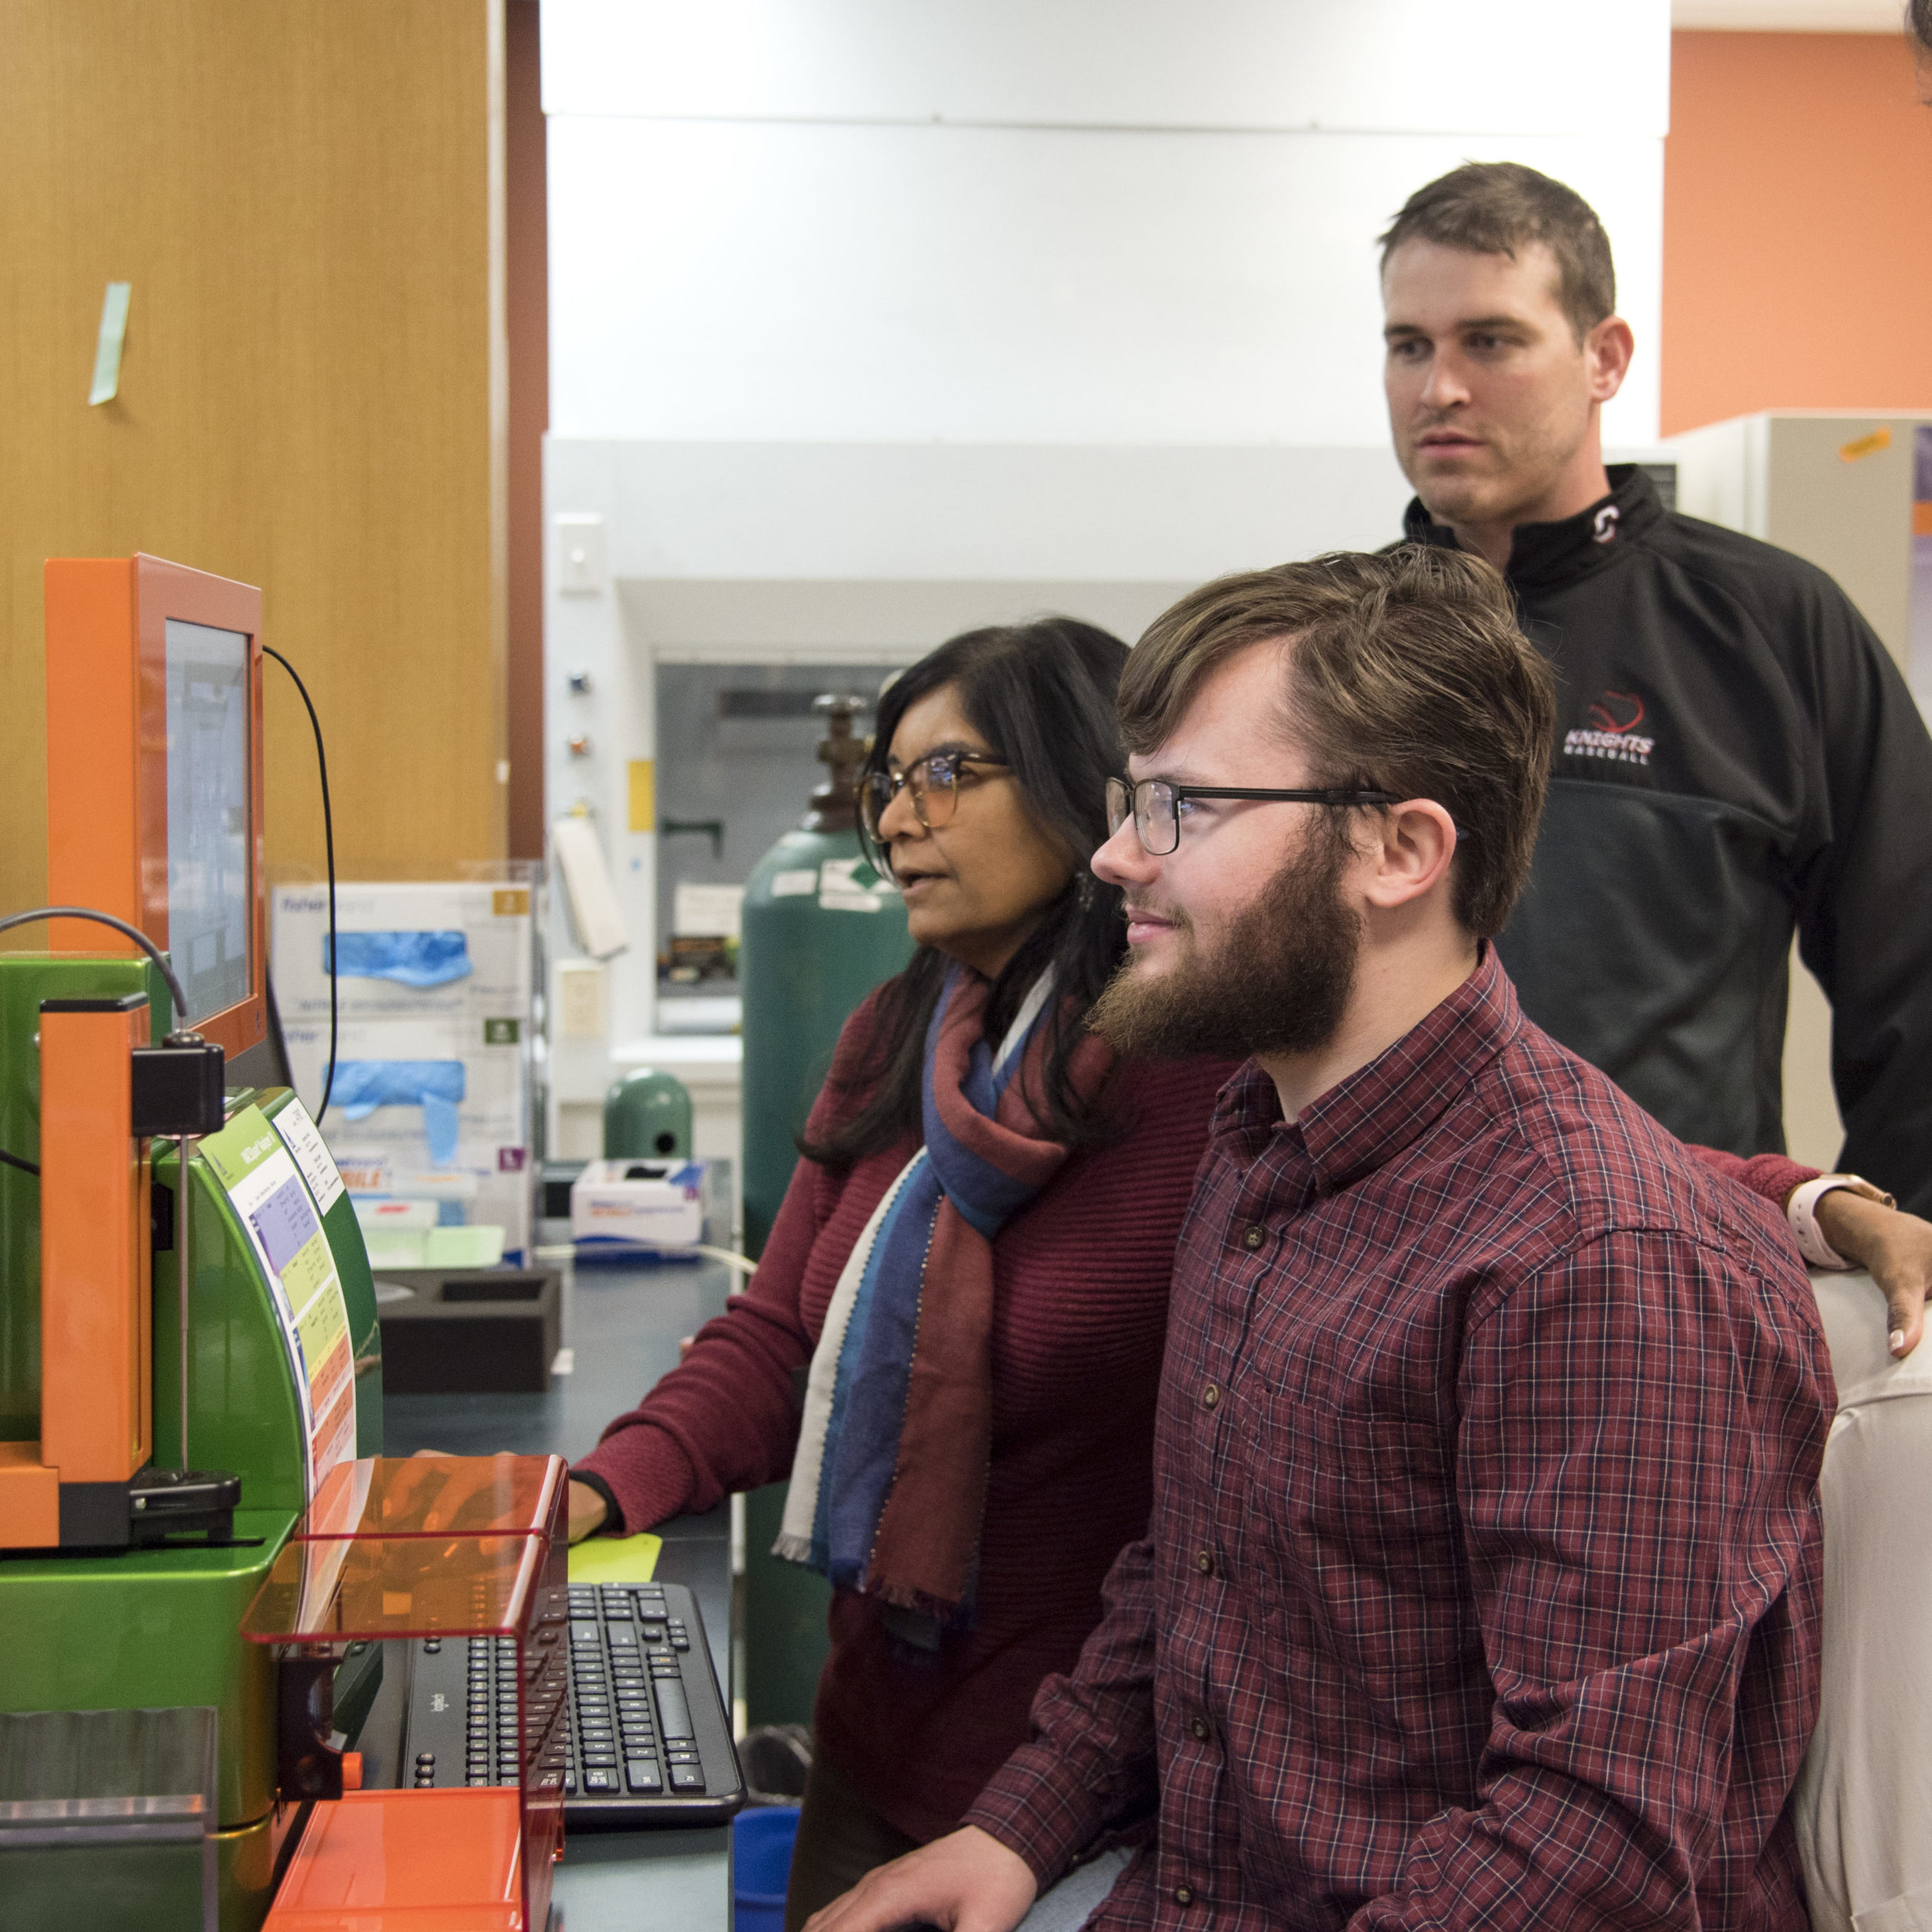 Omics hub scientist instruct graduate students on machinery in lab 